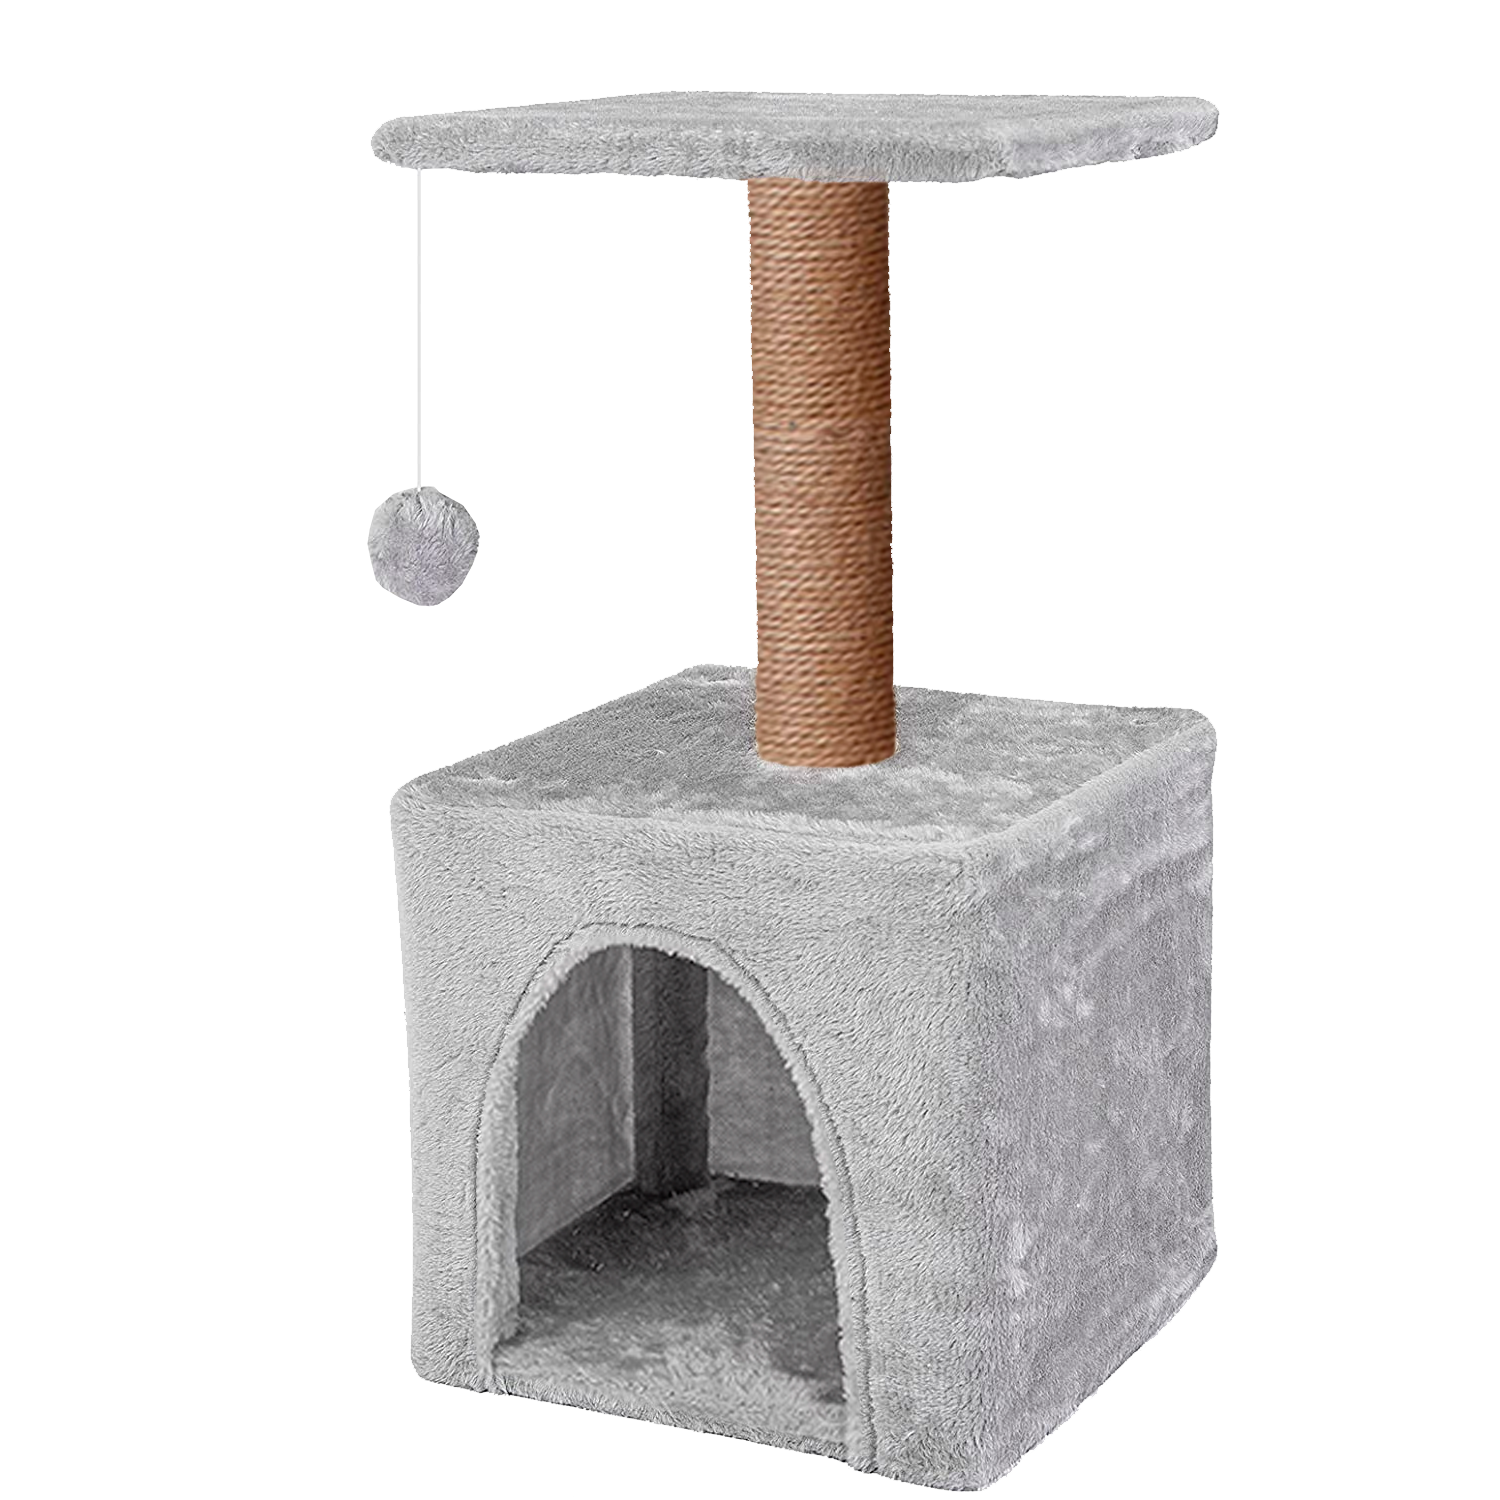 Домик для кошки с когтеточкой Pet БМФ Серый - фото 10